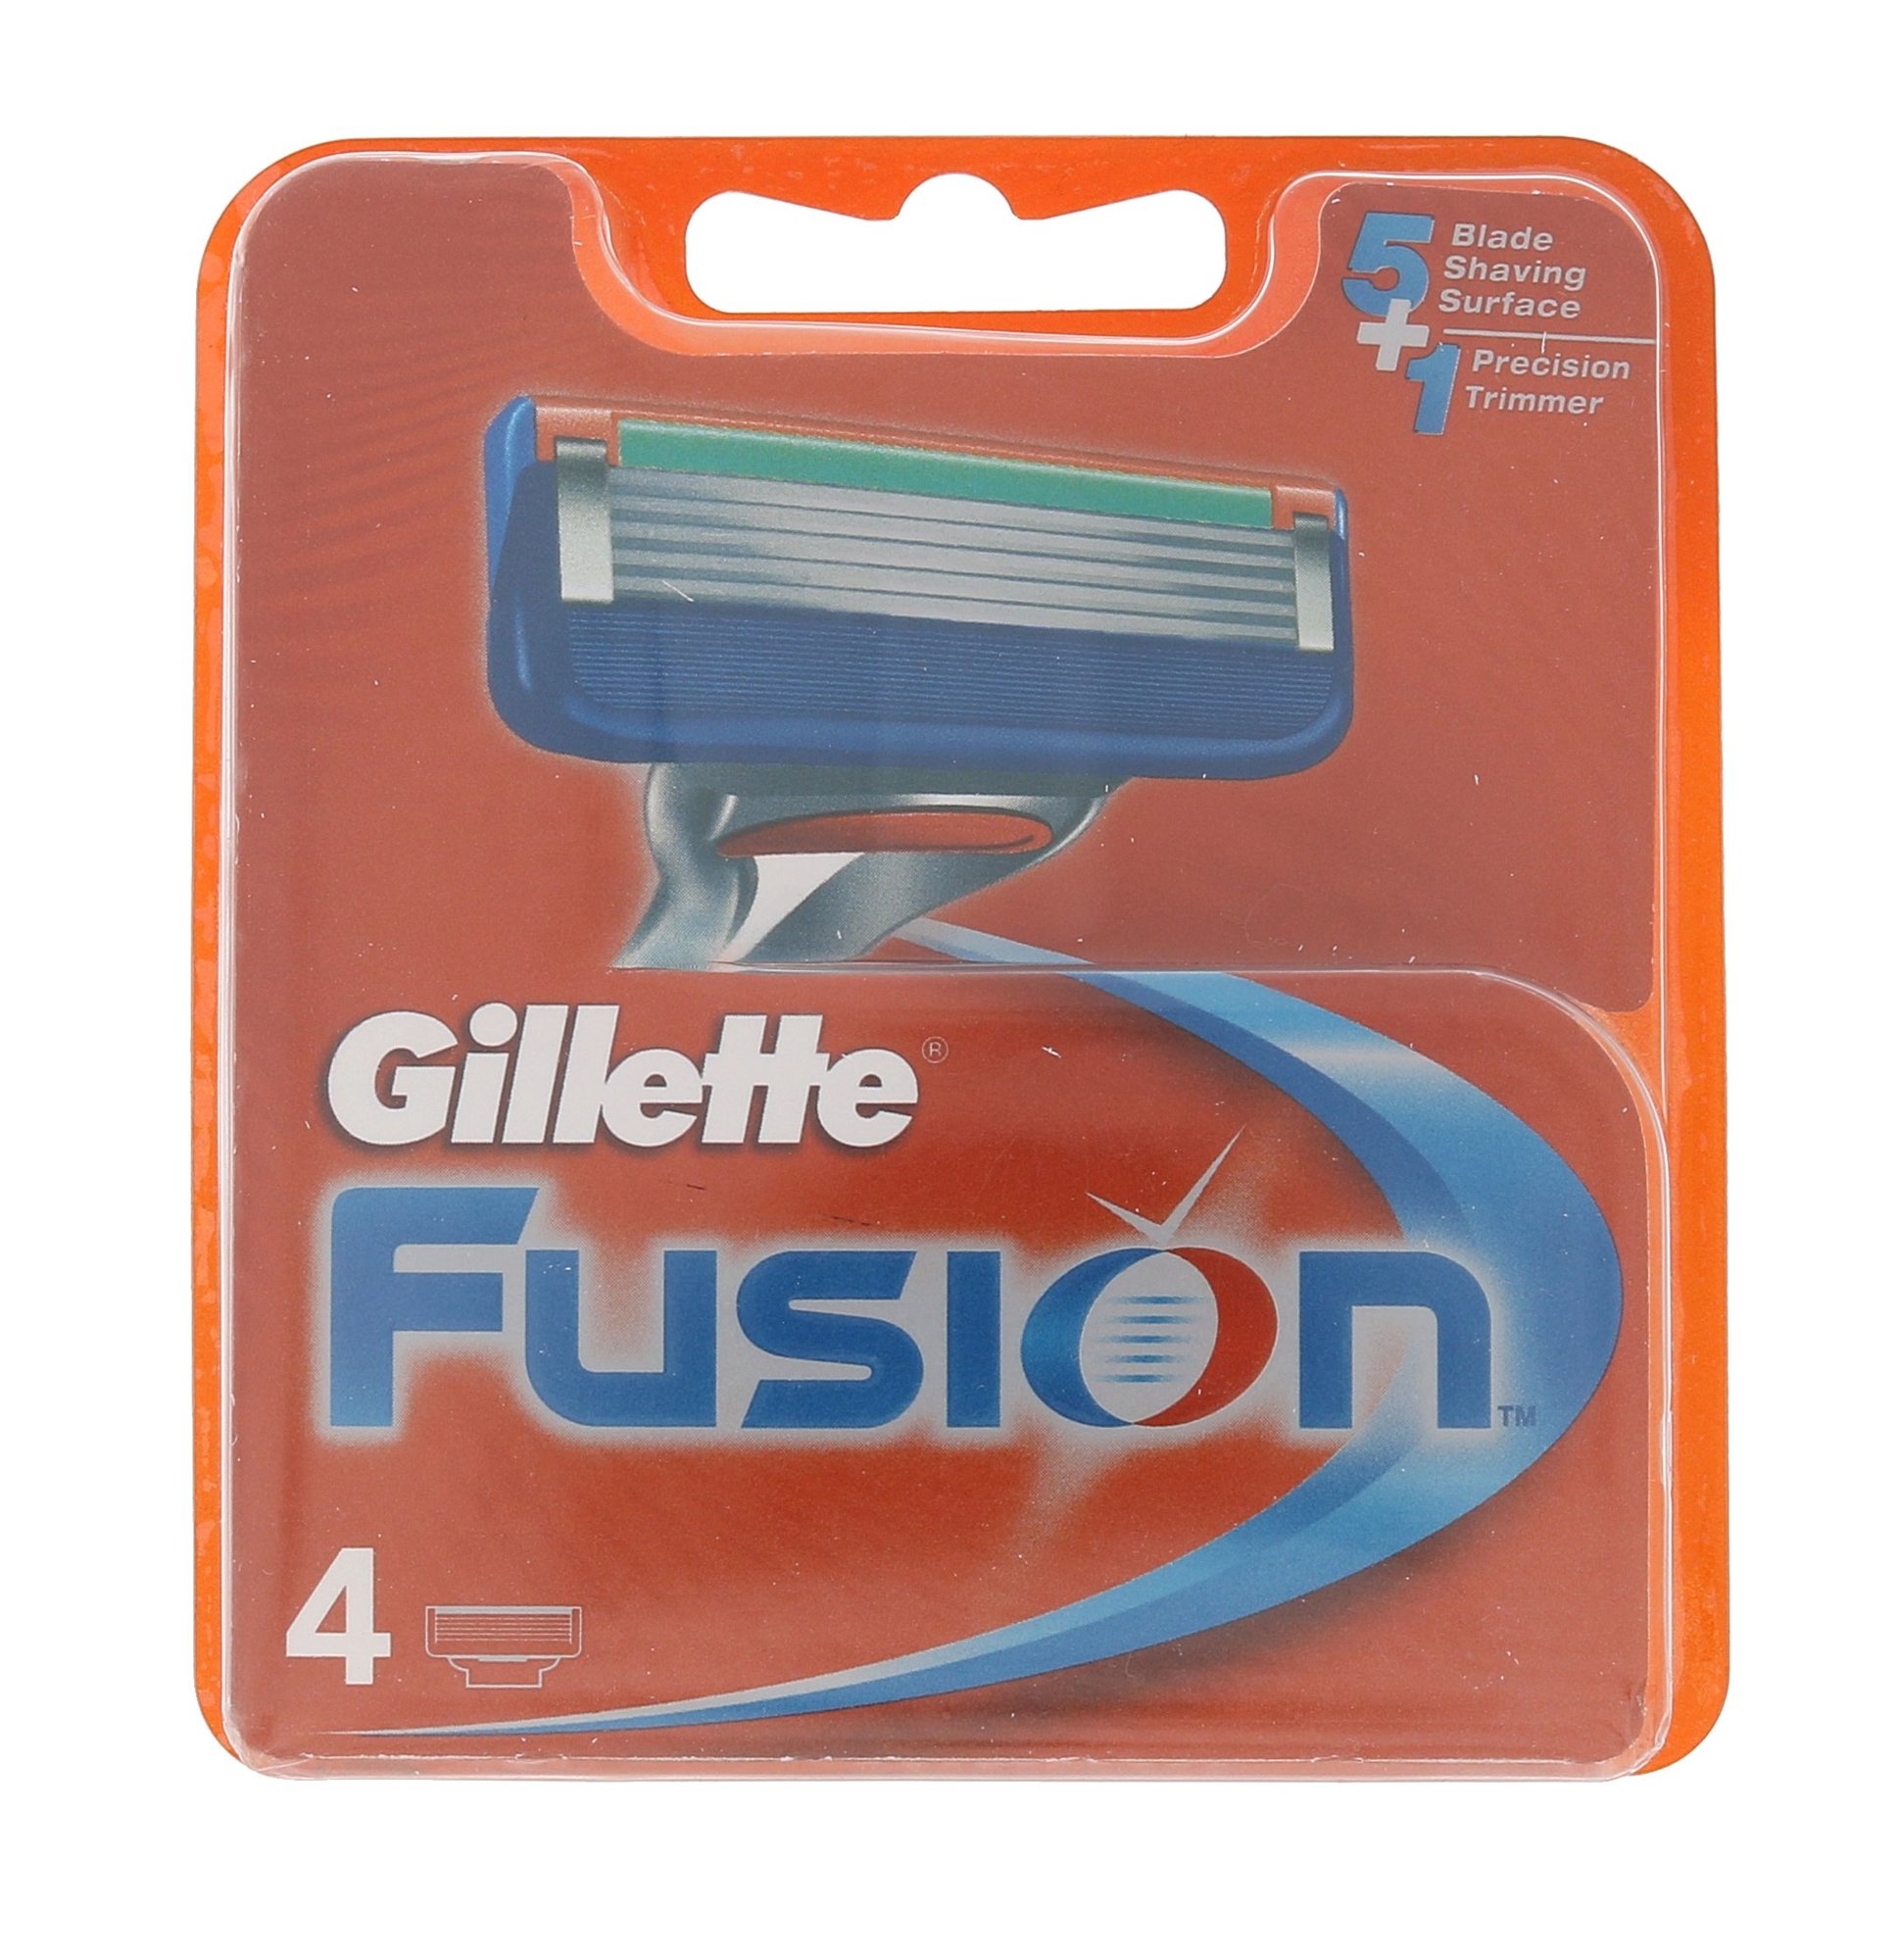 Gillette Fusion skustuvo galvutė